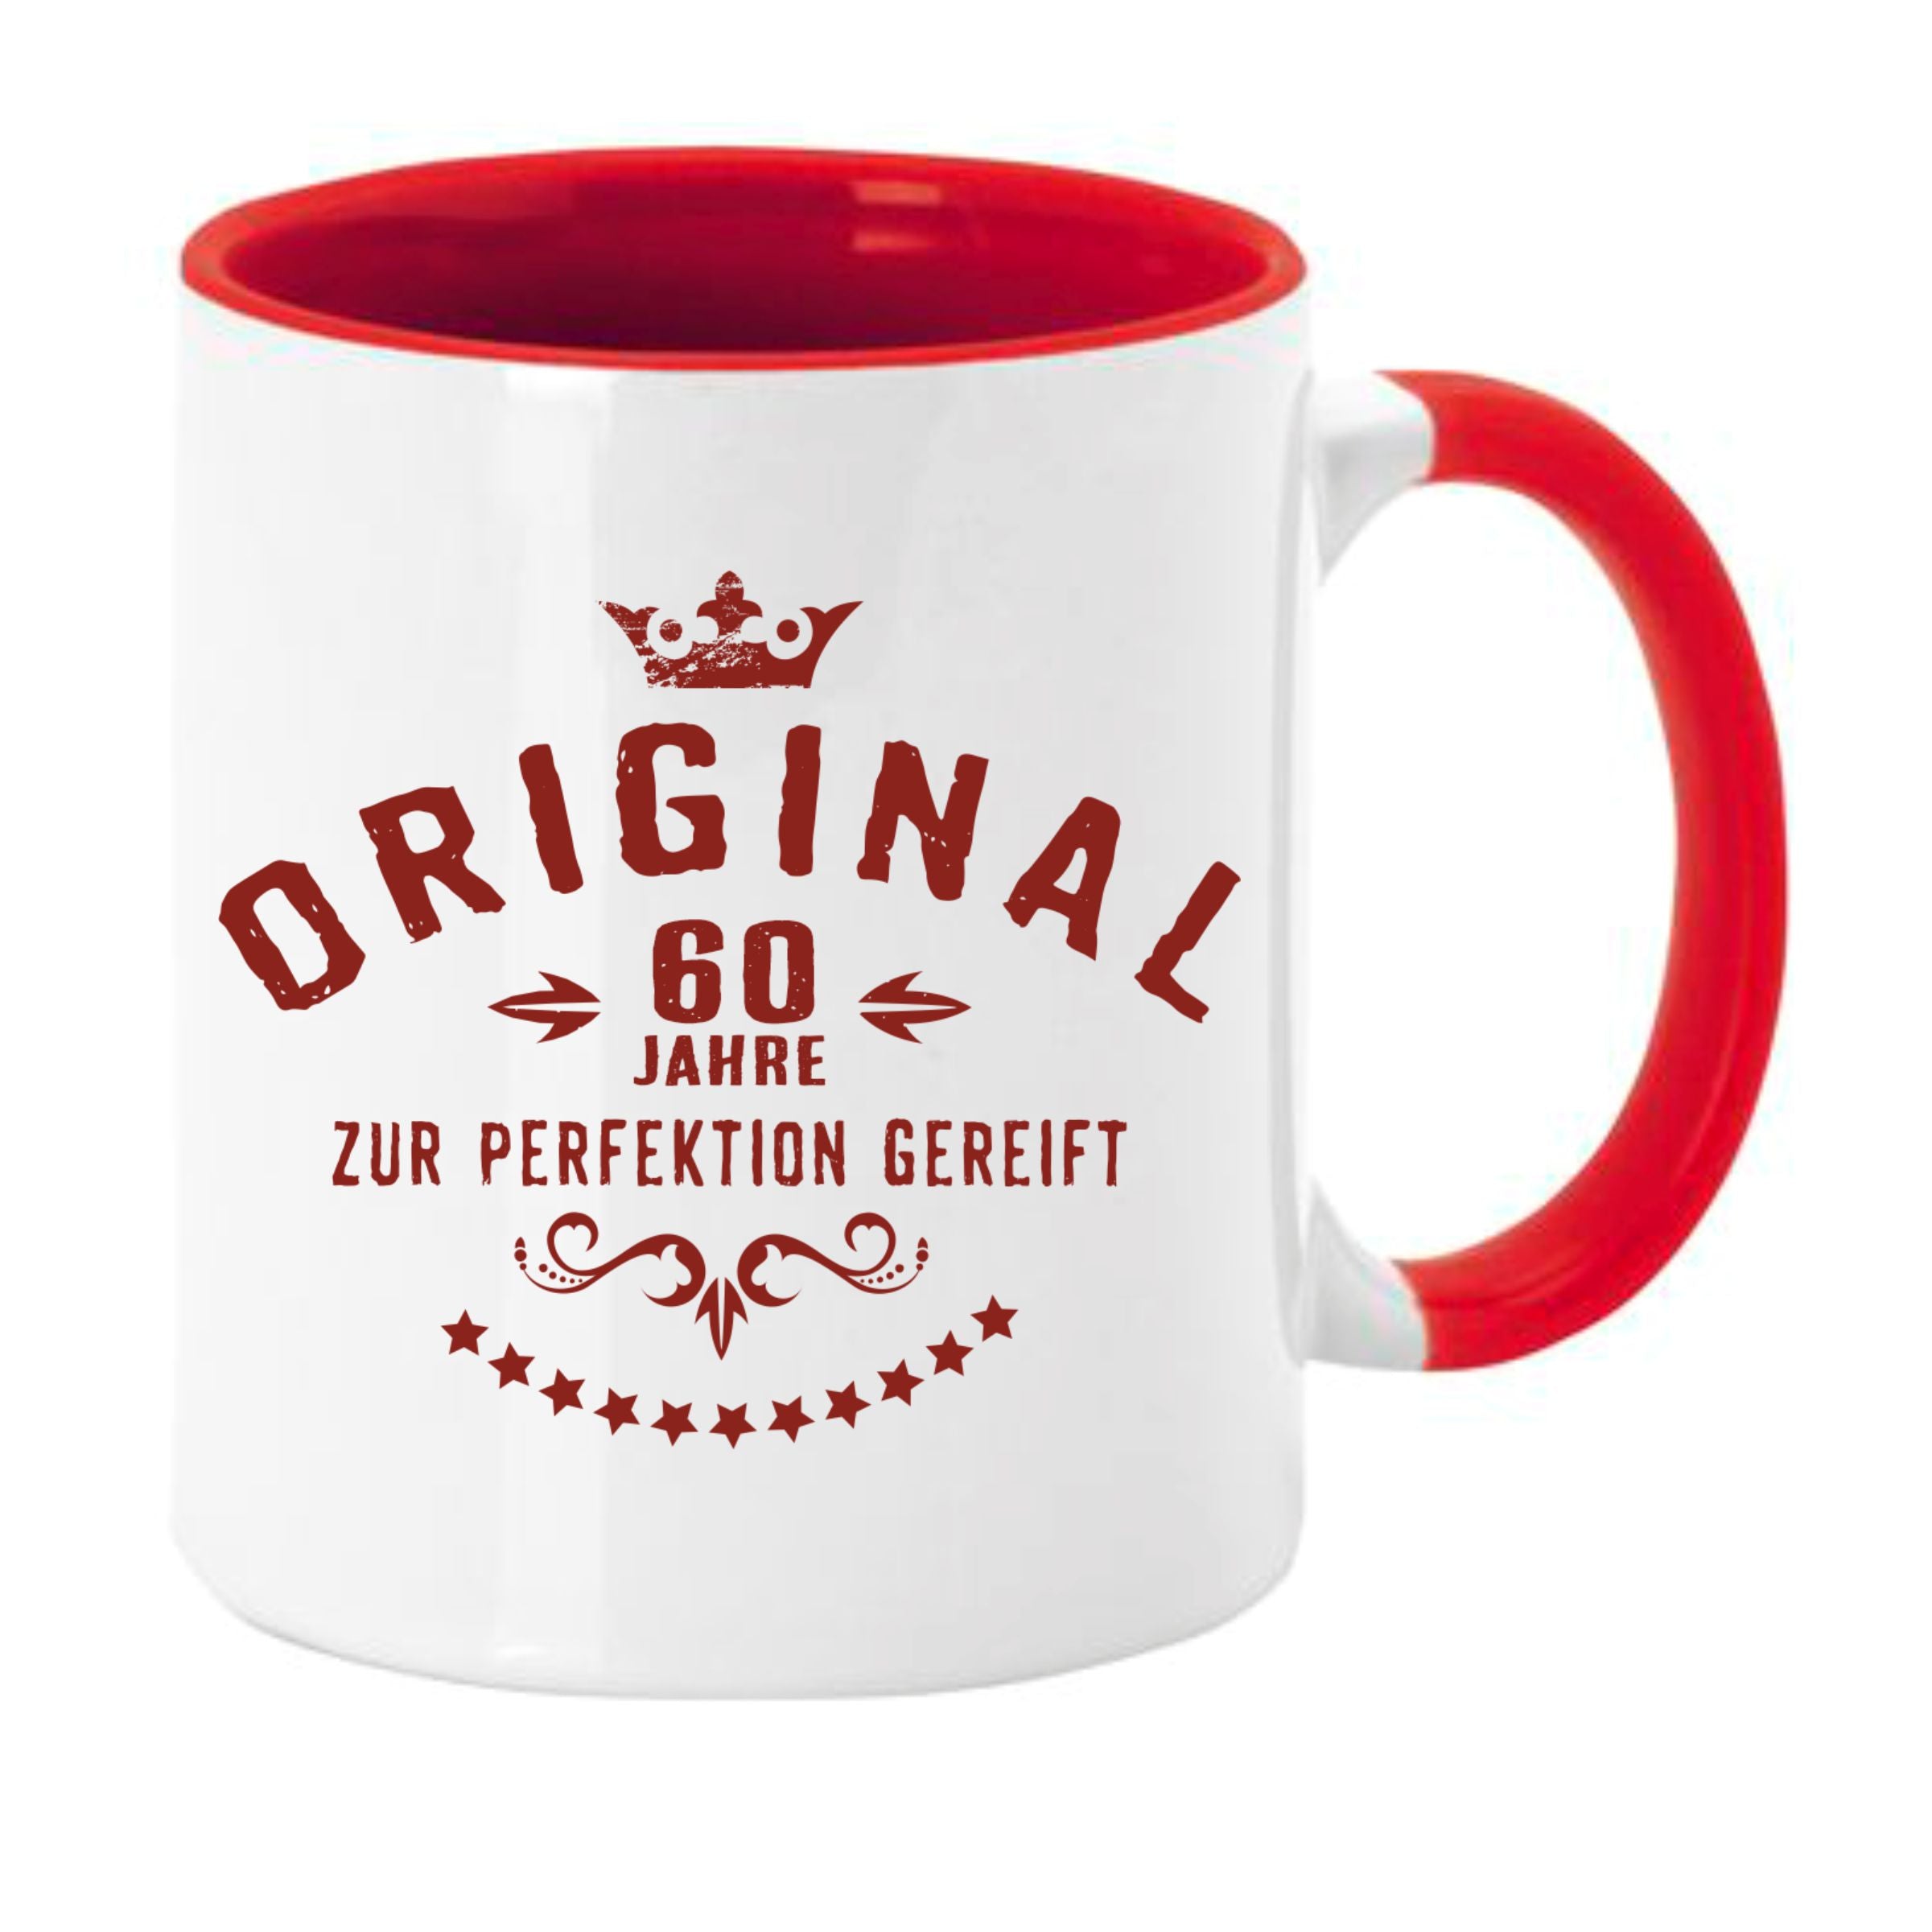 Tasse Kaffeebecher mit Motiv und Spruch zum Geburtstag Original zur Perfektion gereift im GK